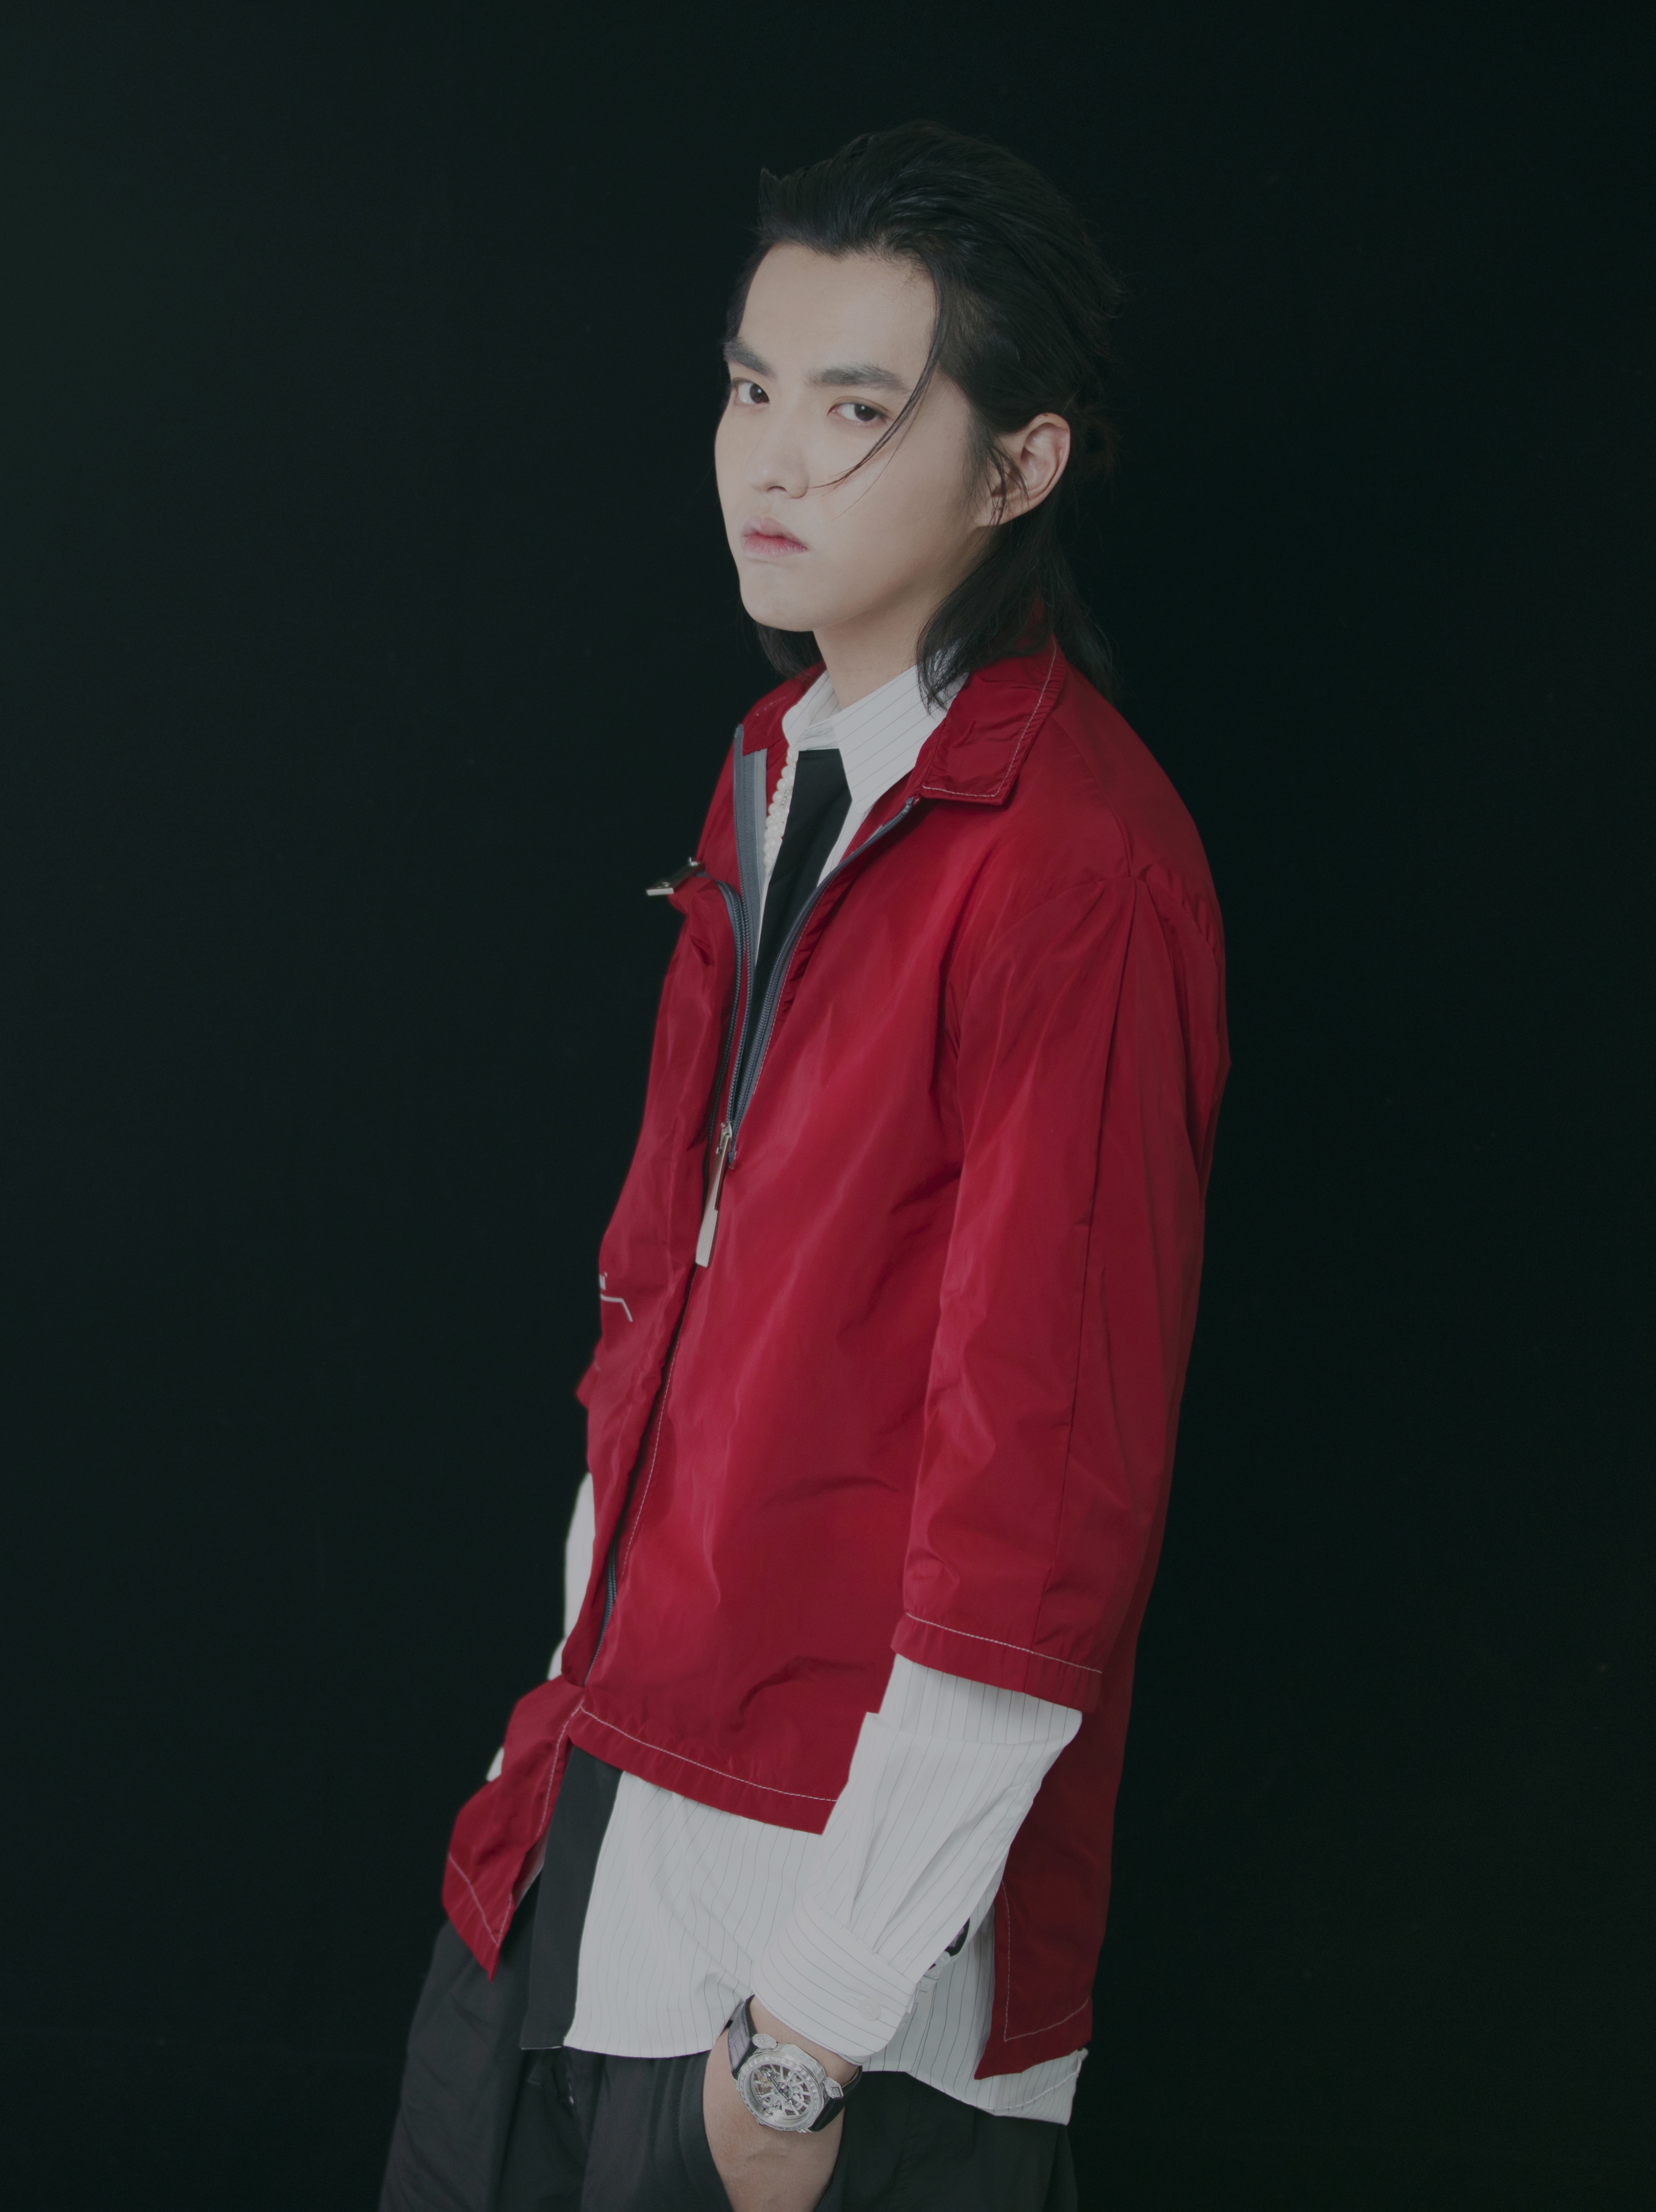 吴亦凡为《中国新说唱》创作的全新单曲《破晓》已上线